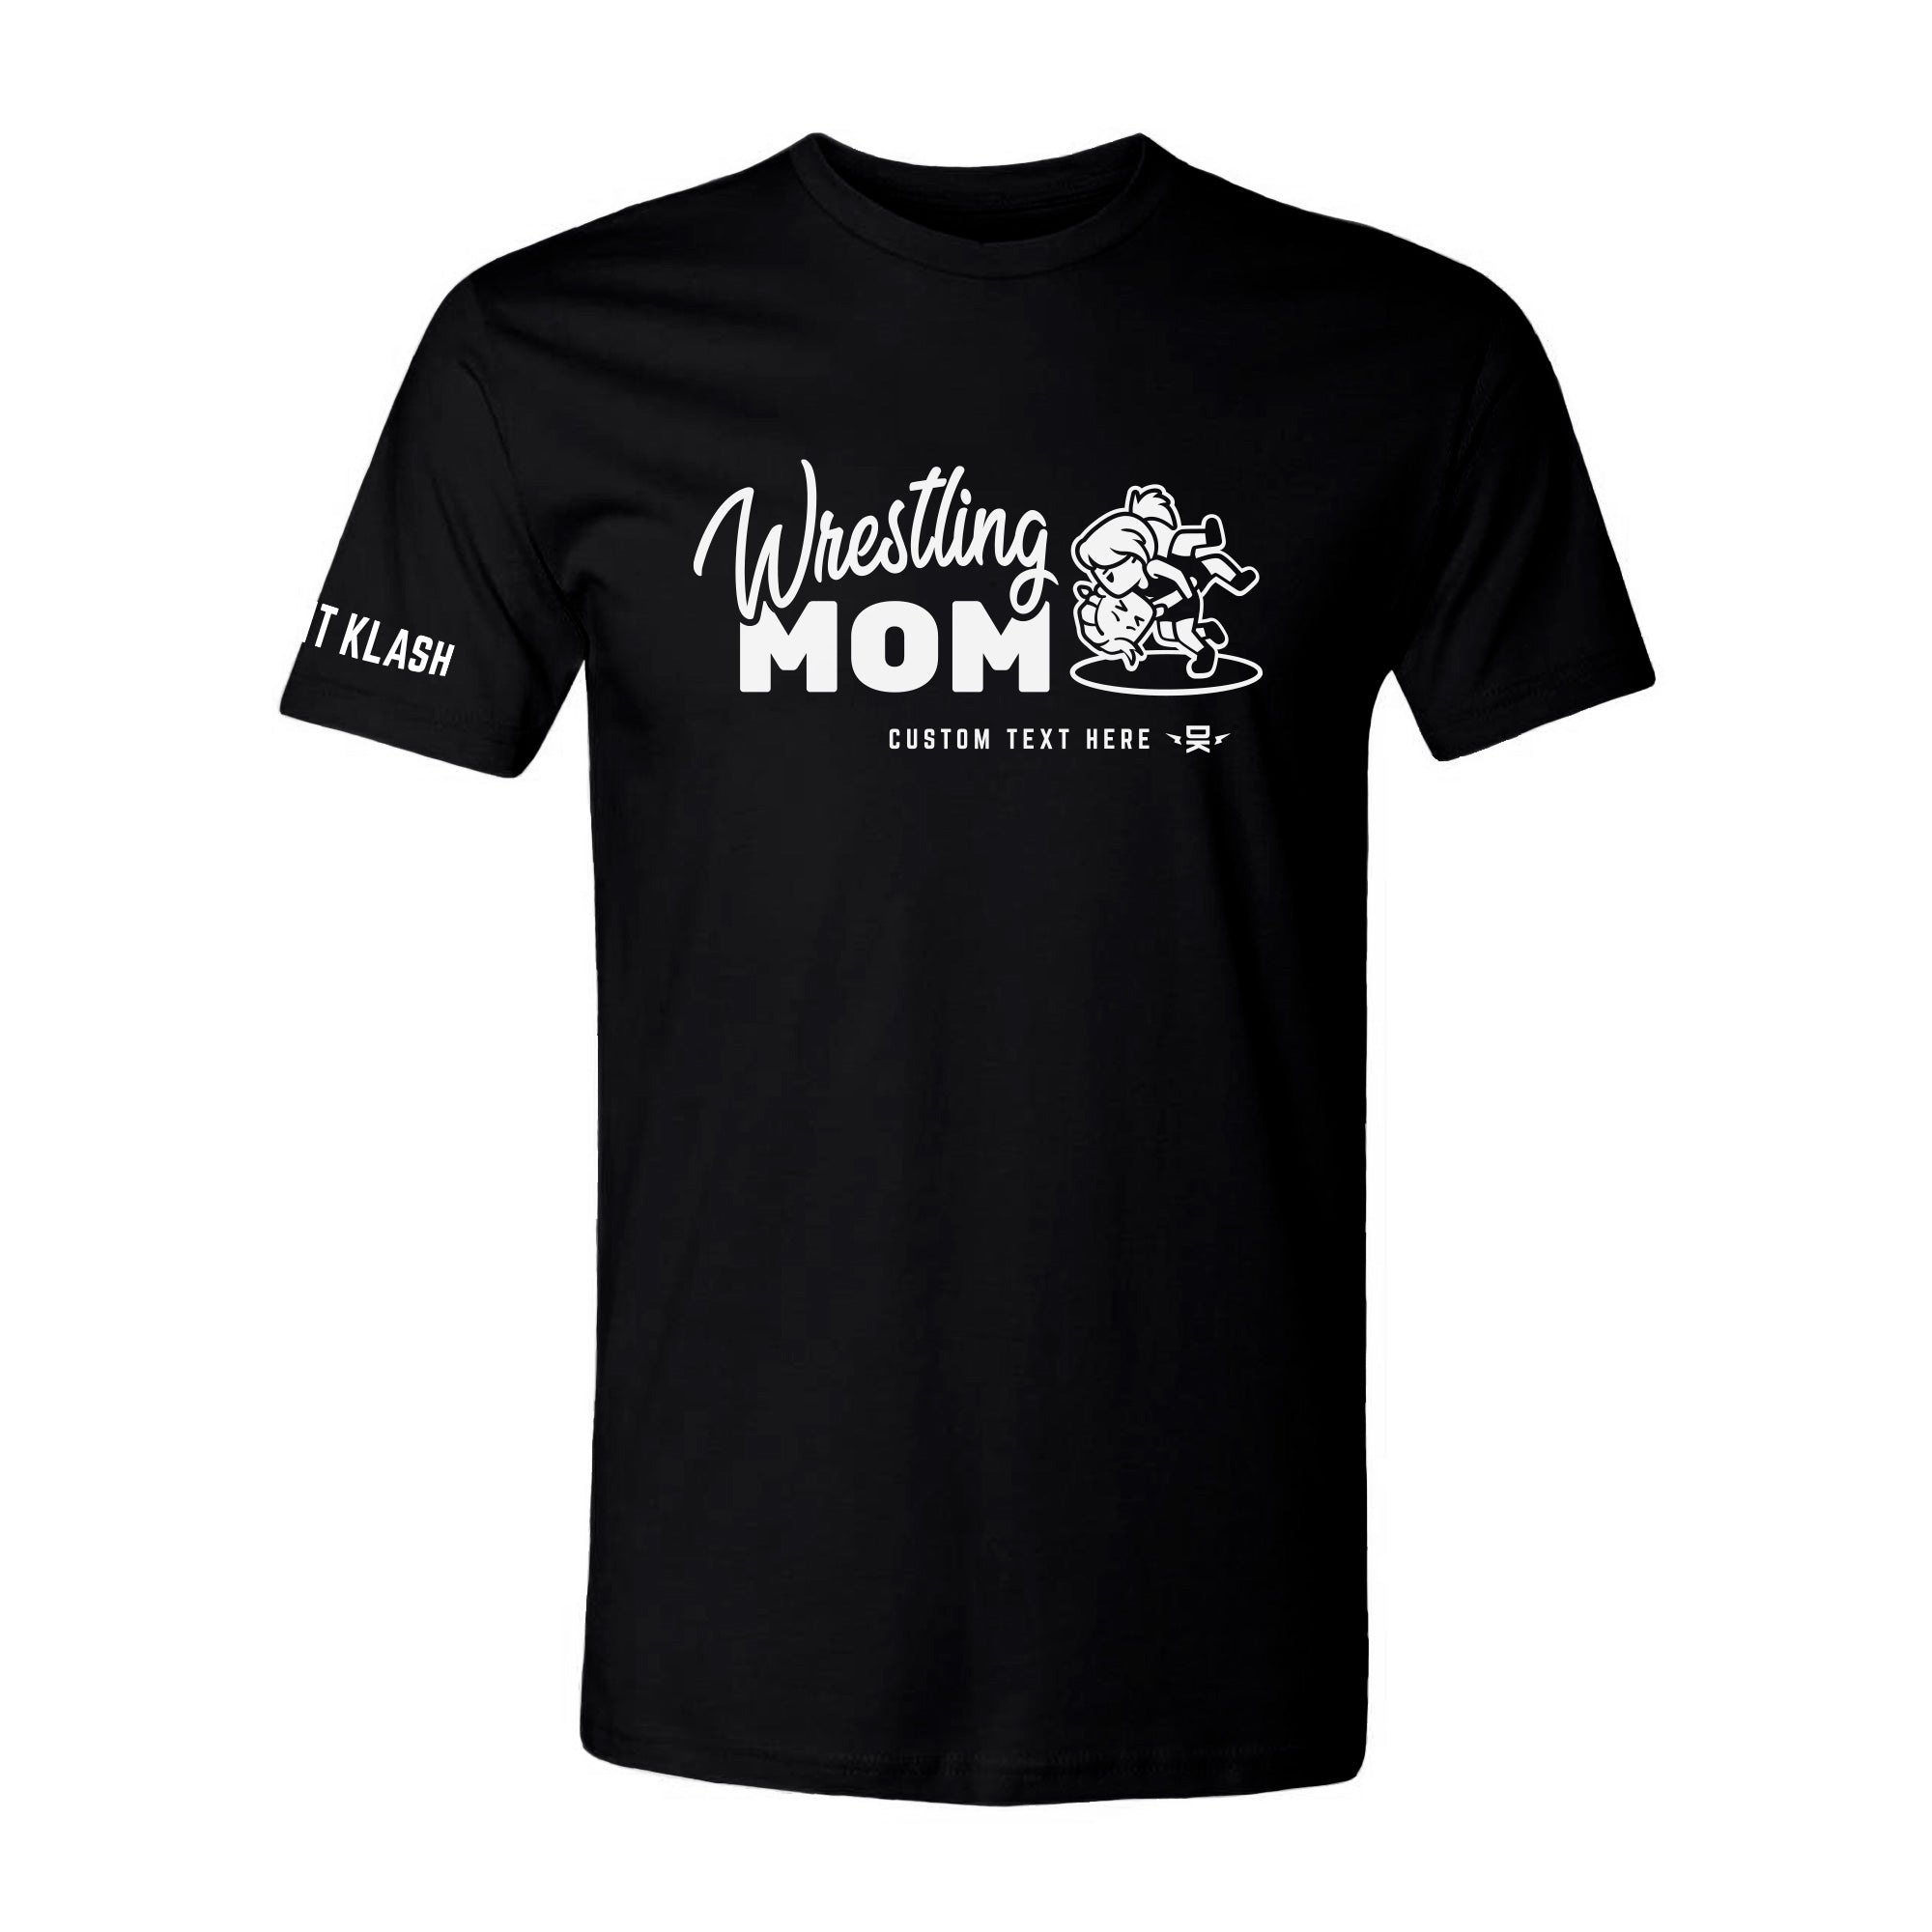 Wrestling Mom T-Shirt - Black